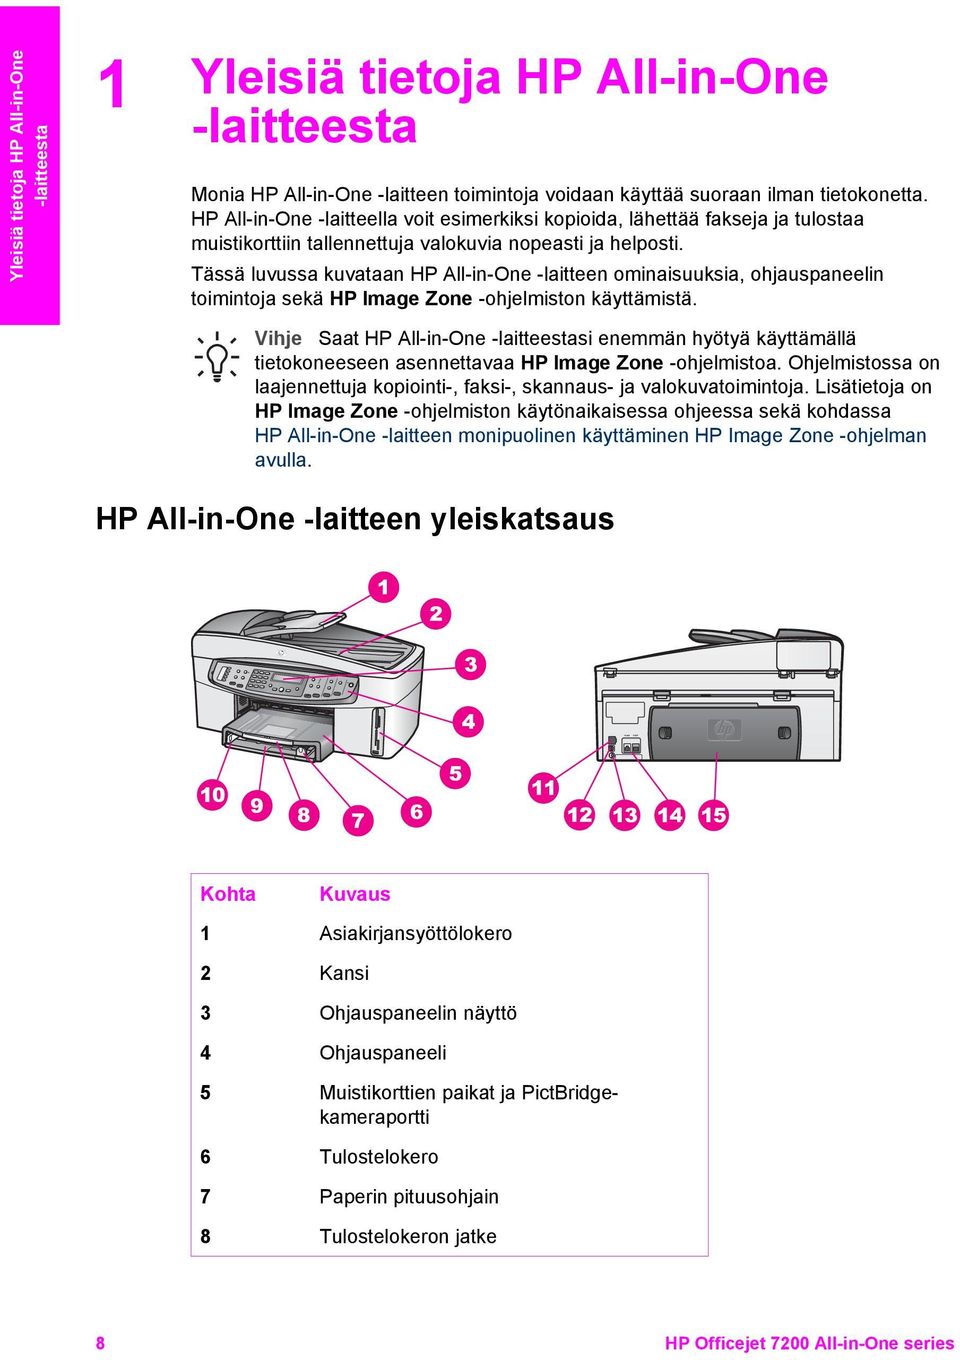 Tässä luvussa kuvataan HP All-in-One -laitteen ominaisuuksia, ohjauspaneelin toimintoja sekä HP Image Zone -ohjelmiston käyttämistä.